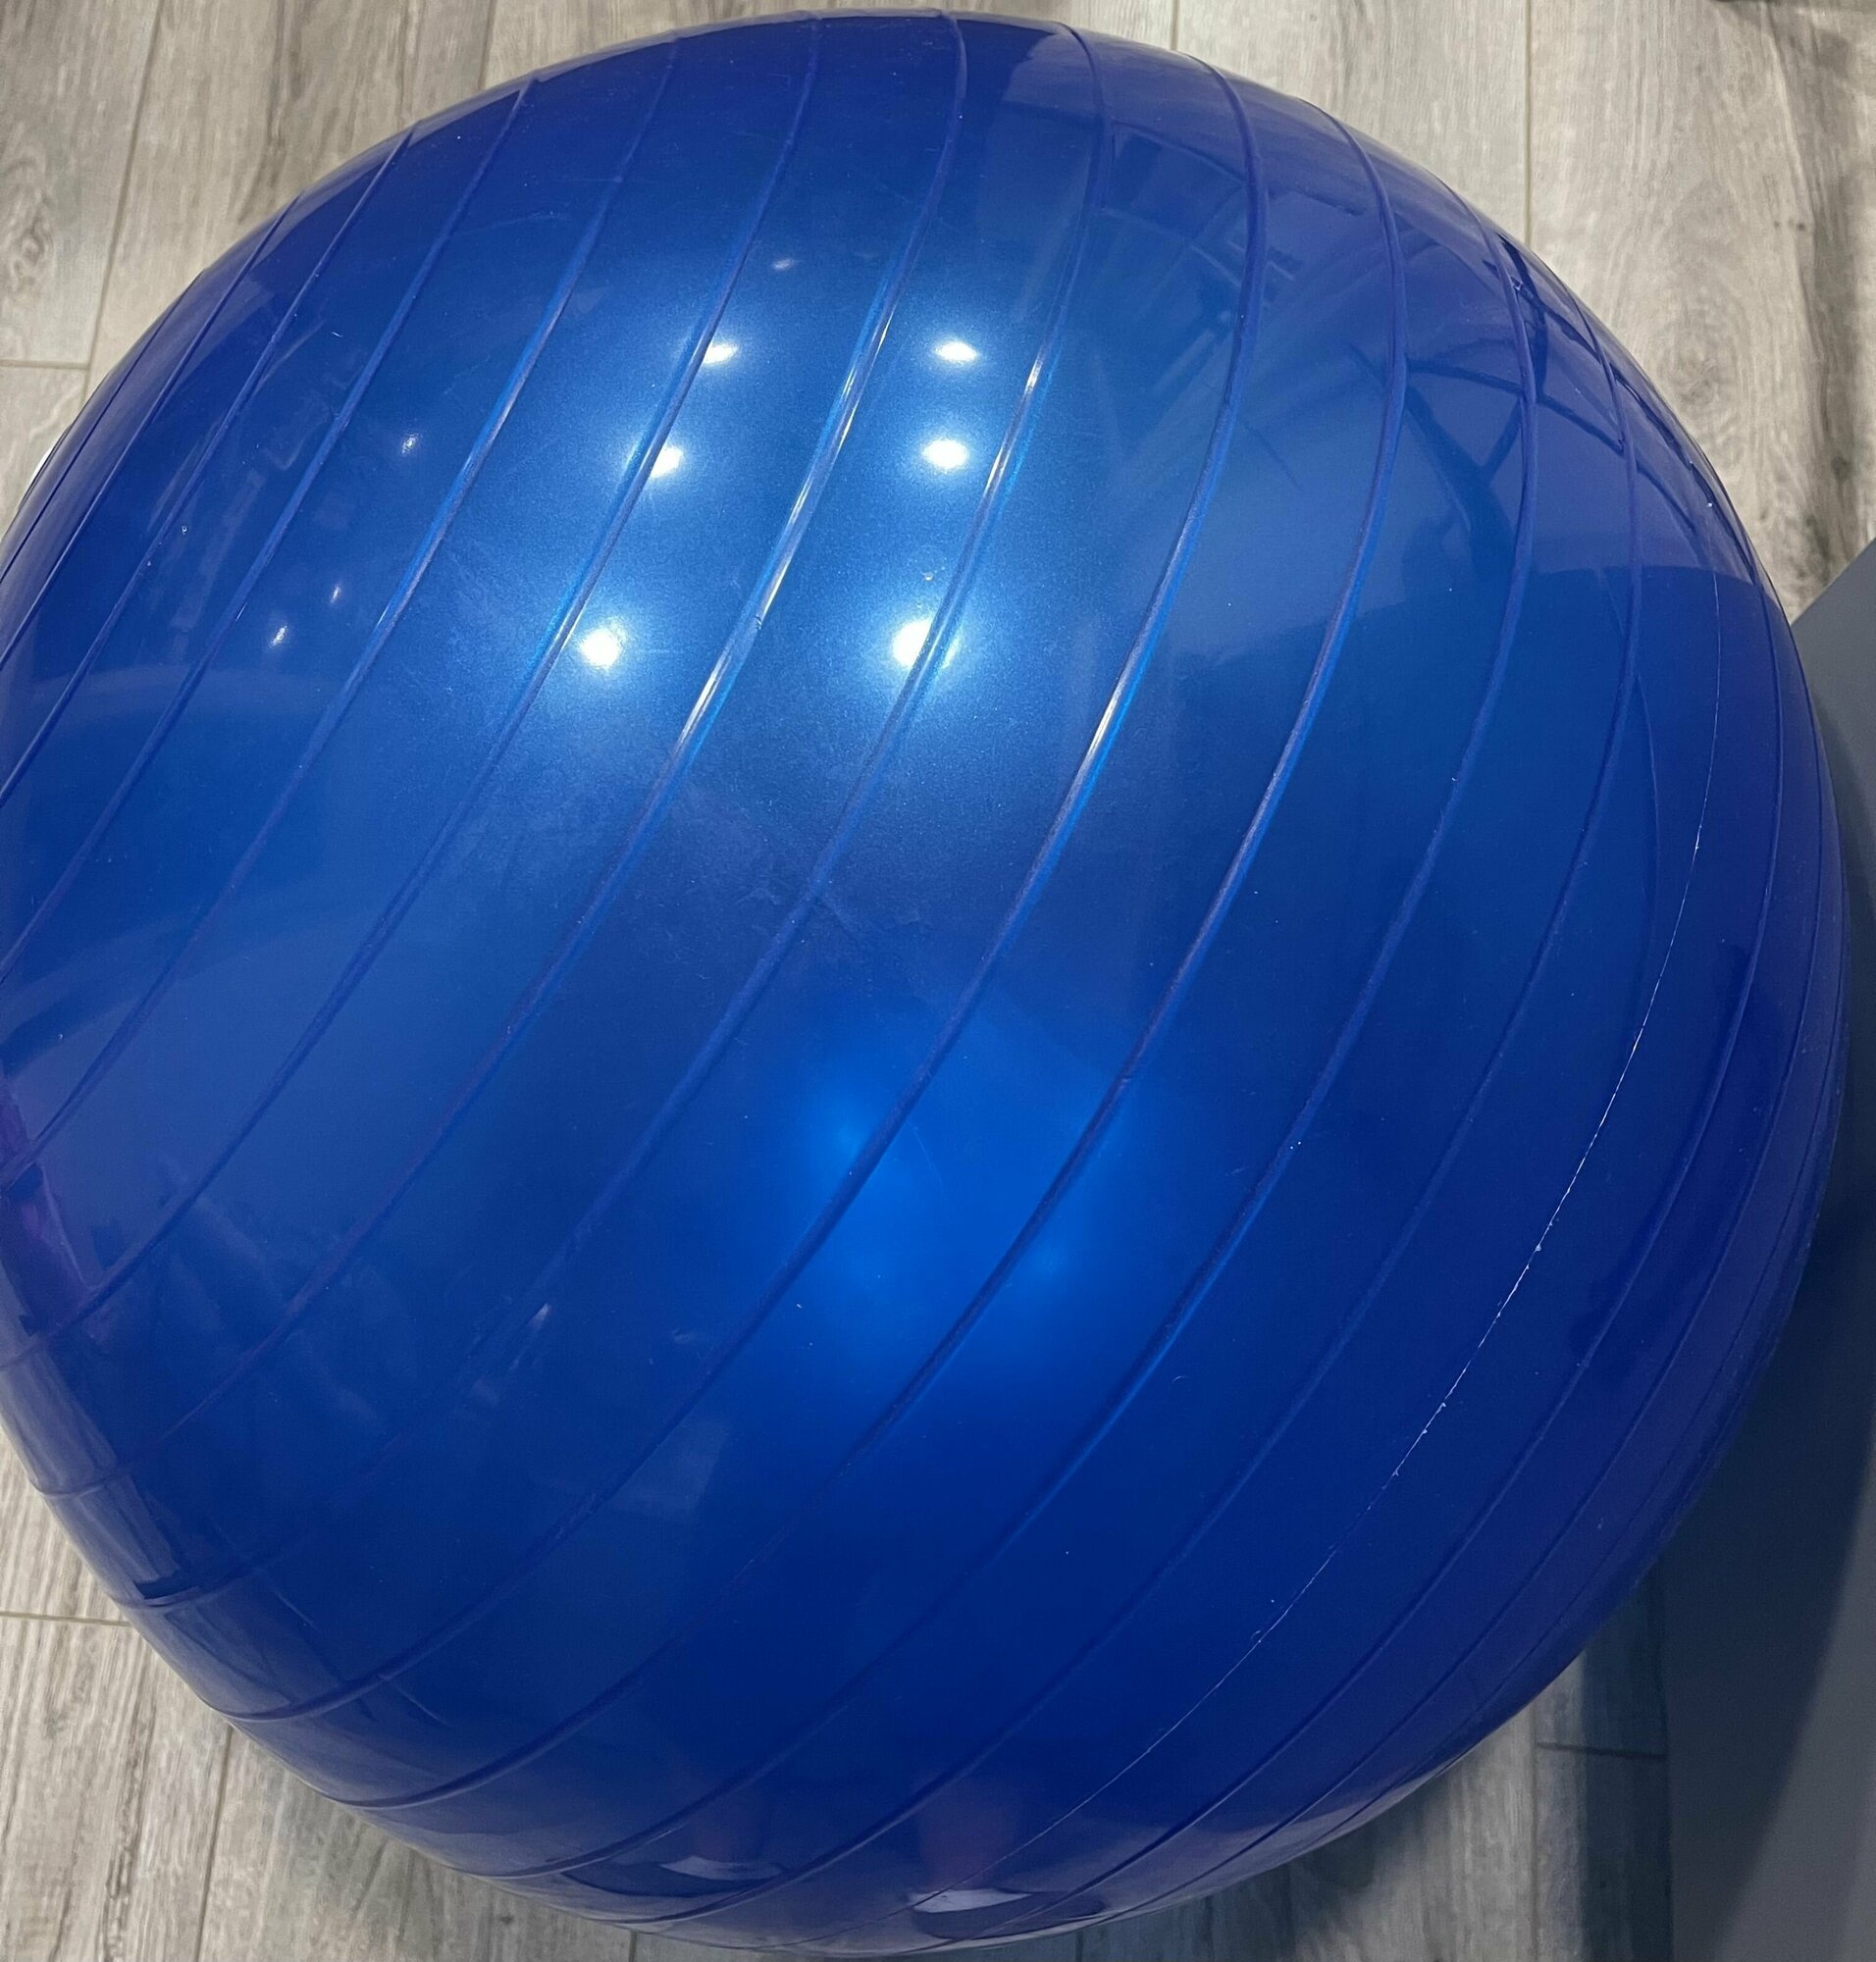 Гимнастический мяч для фитнеса, йоги и пилатеса, надувной мяч для детей и взрослых, синий, диаметр 55